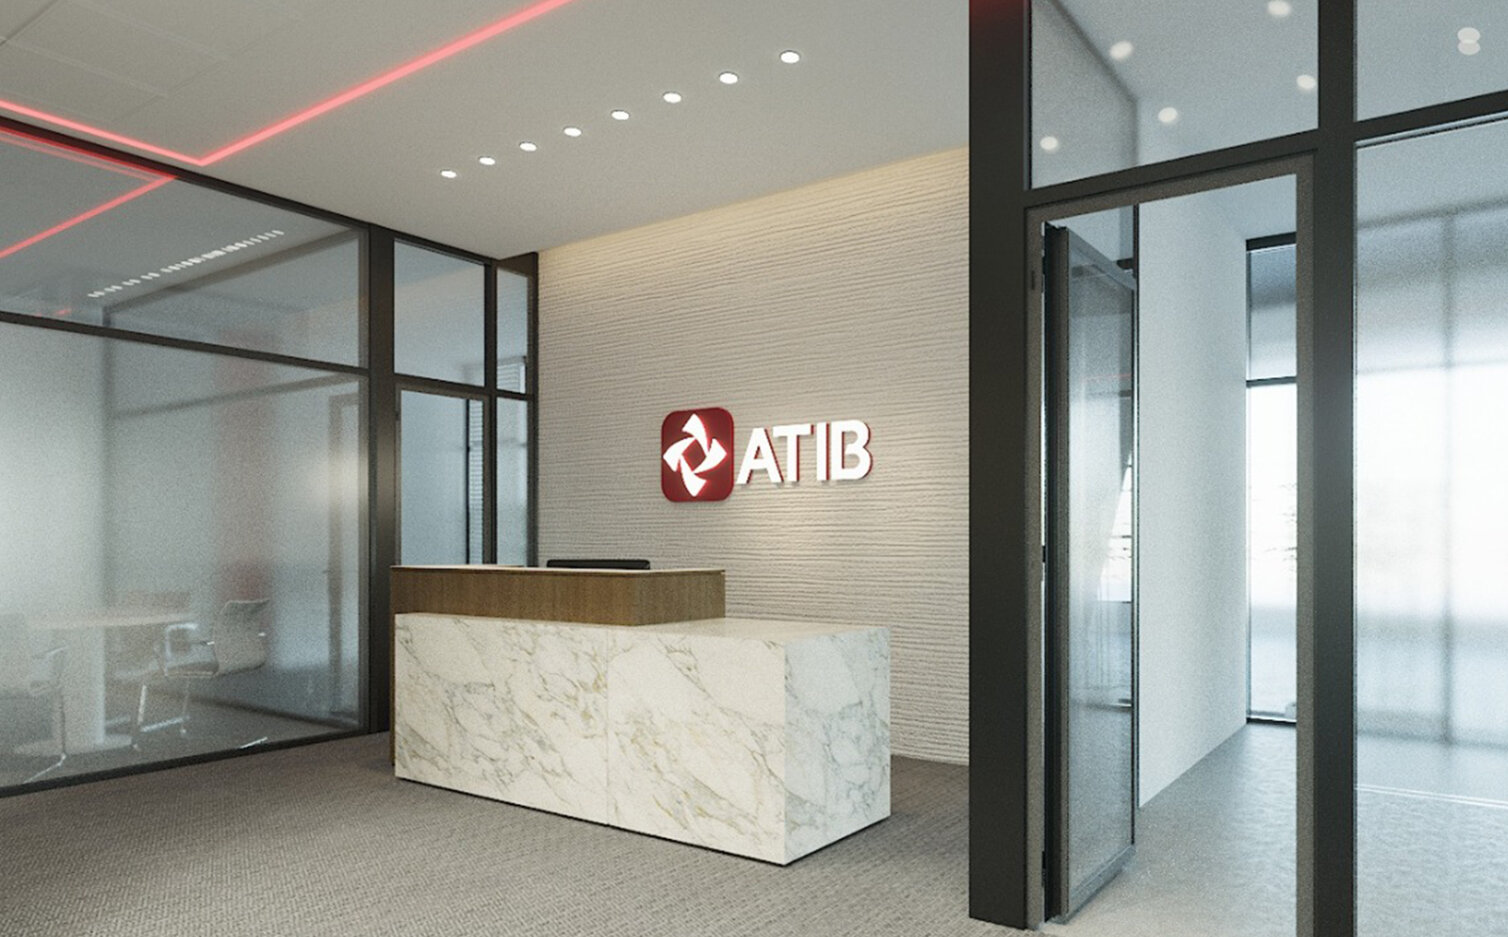 ATIB Bank, Libya